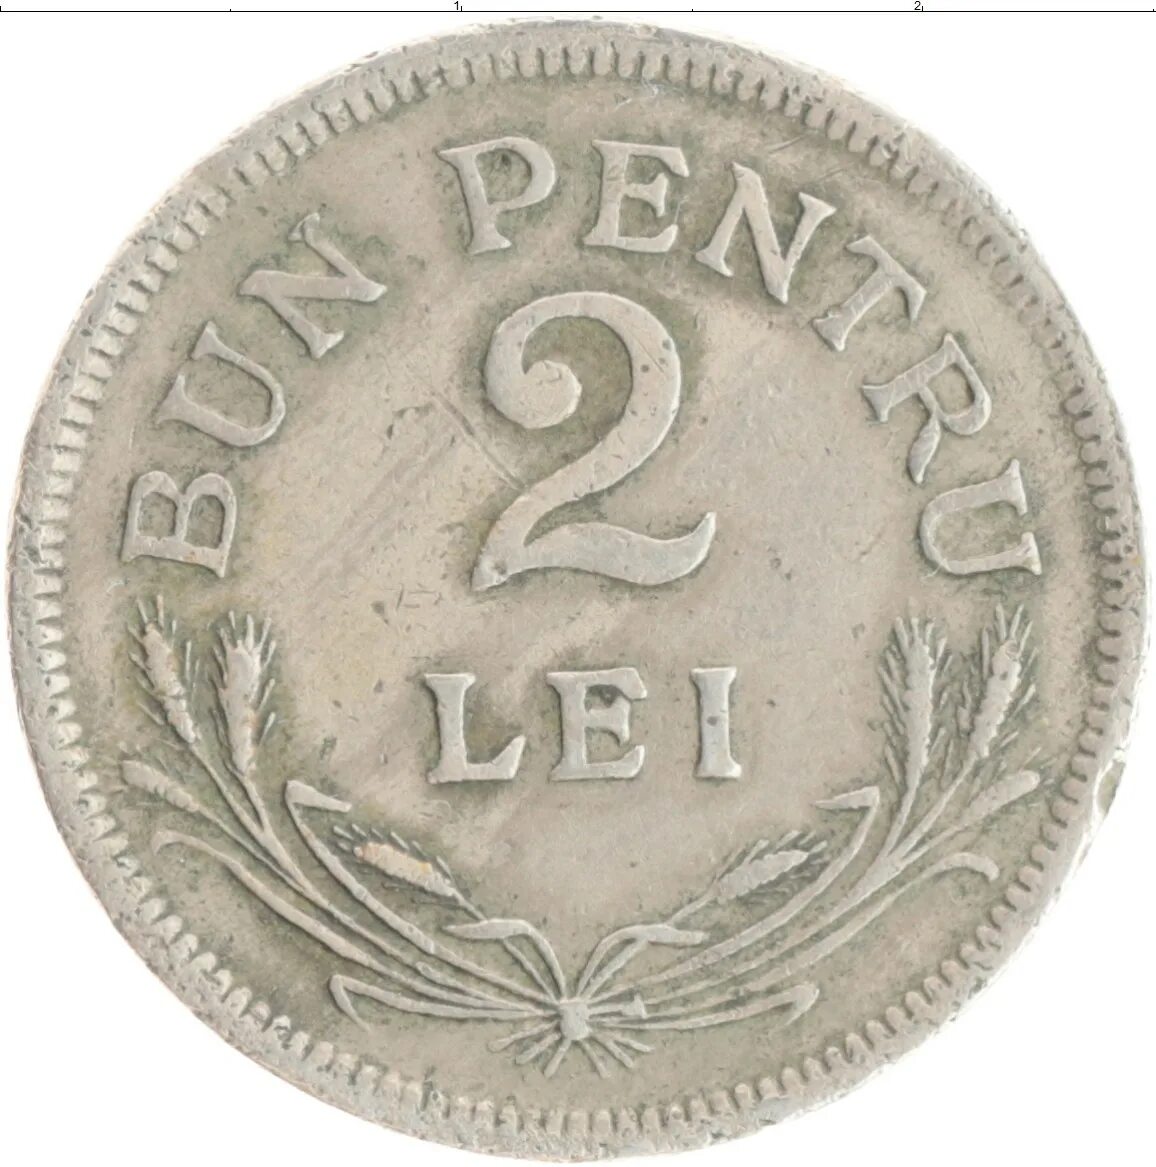 Пей лей 2. Румынские Леи монеты. Румынский лей манет. Монеты Румынии 1934 1944 года. Румынский лей железные.